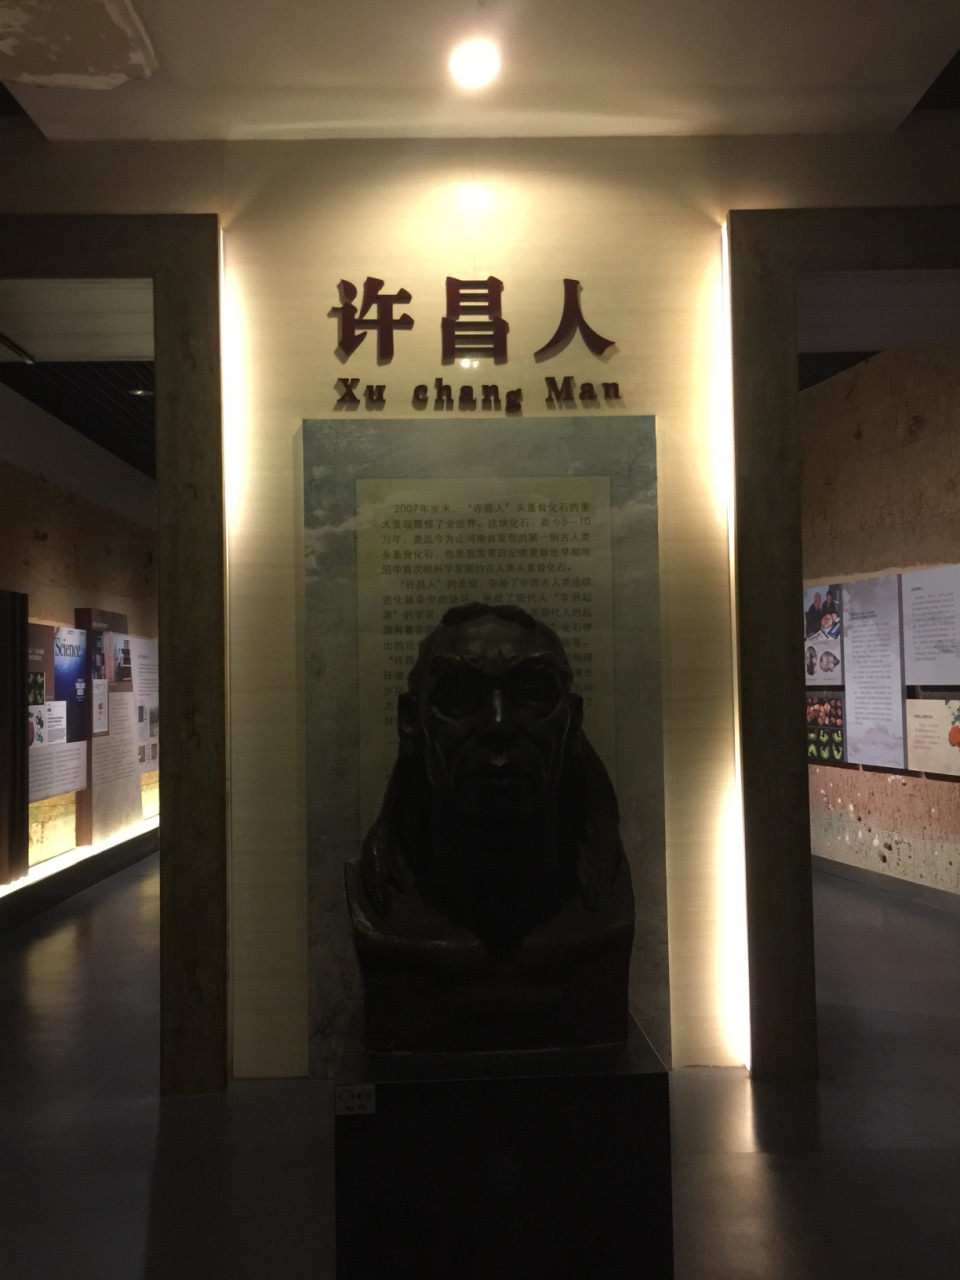 许昌博物馆内的路线图图片